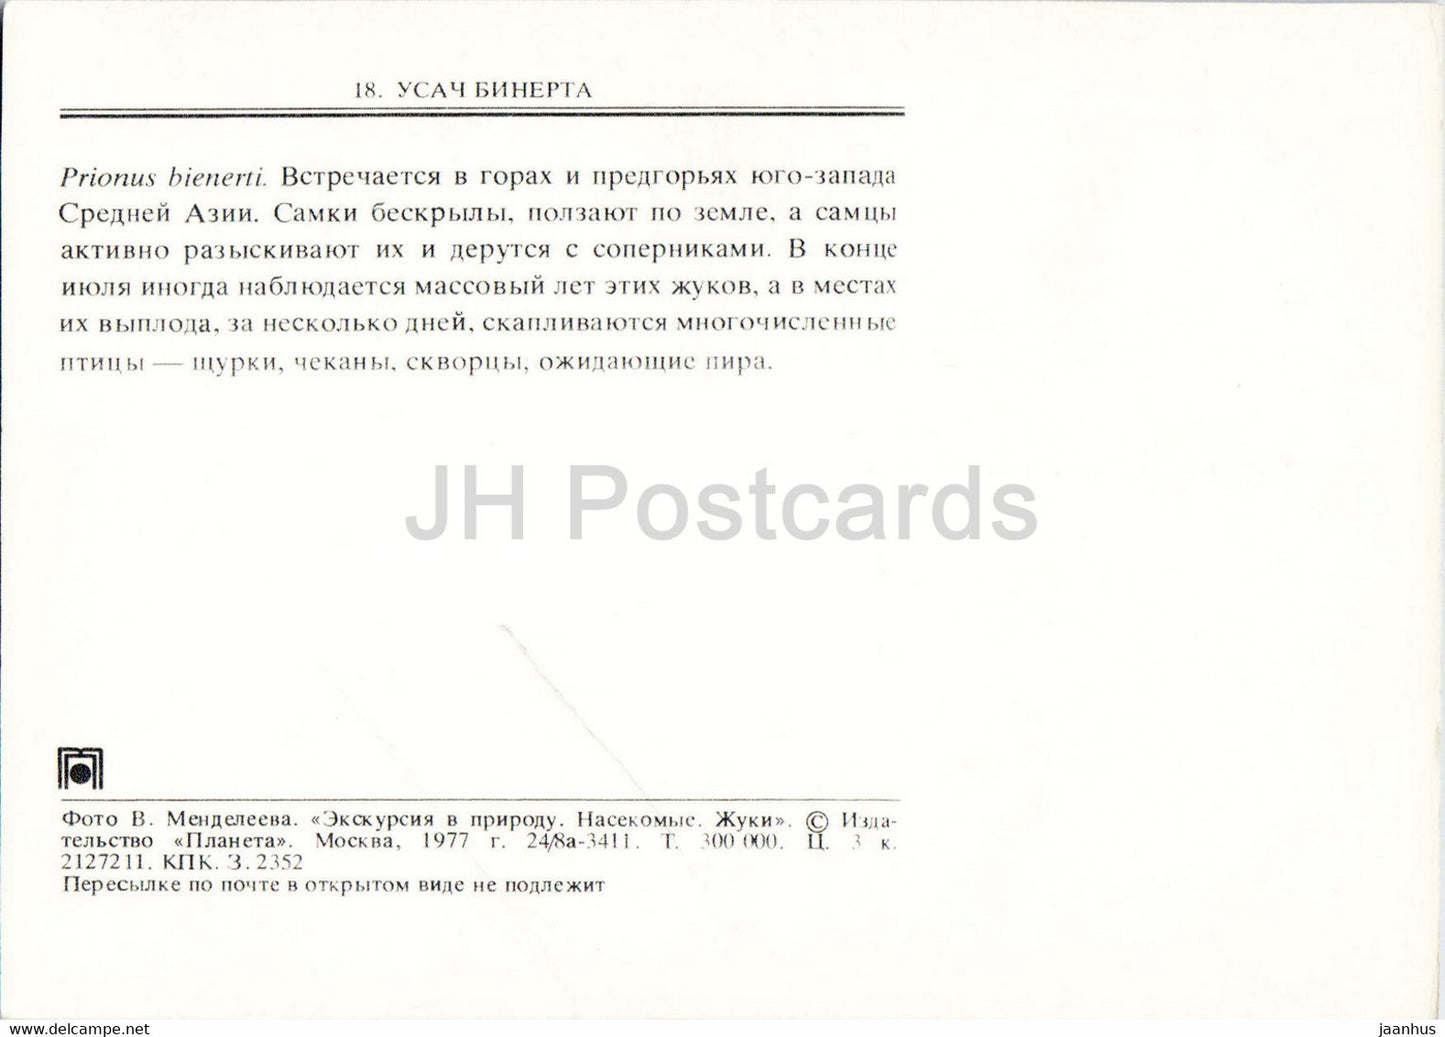 Prionus bienerti - insects - 1977 - Russia USSR - unused